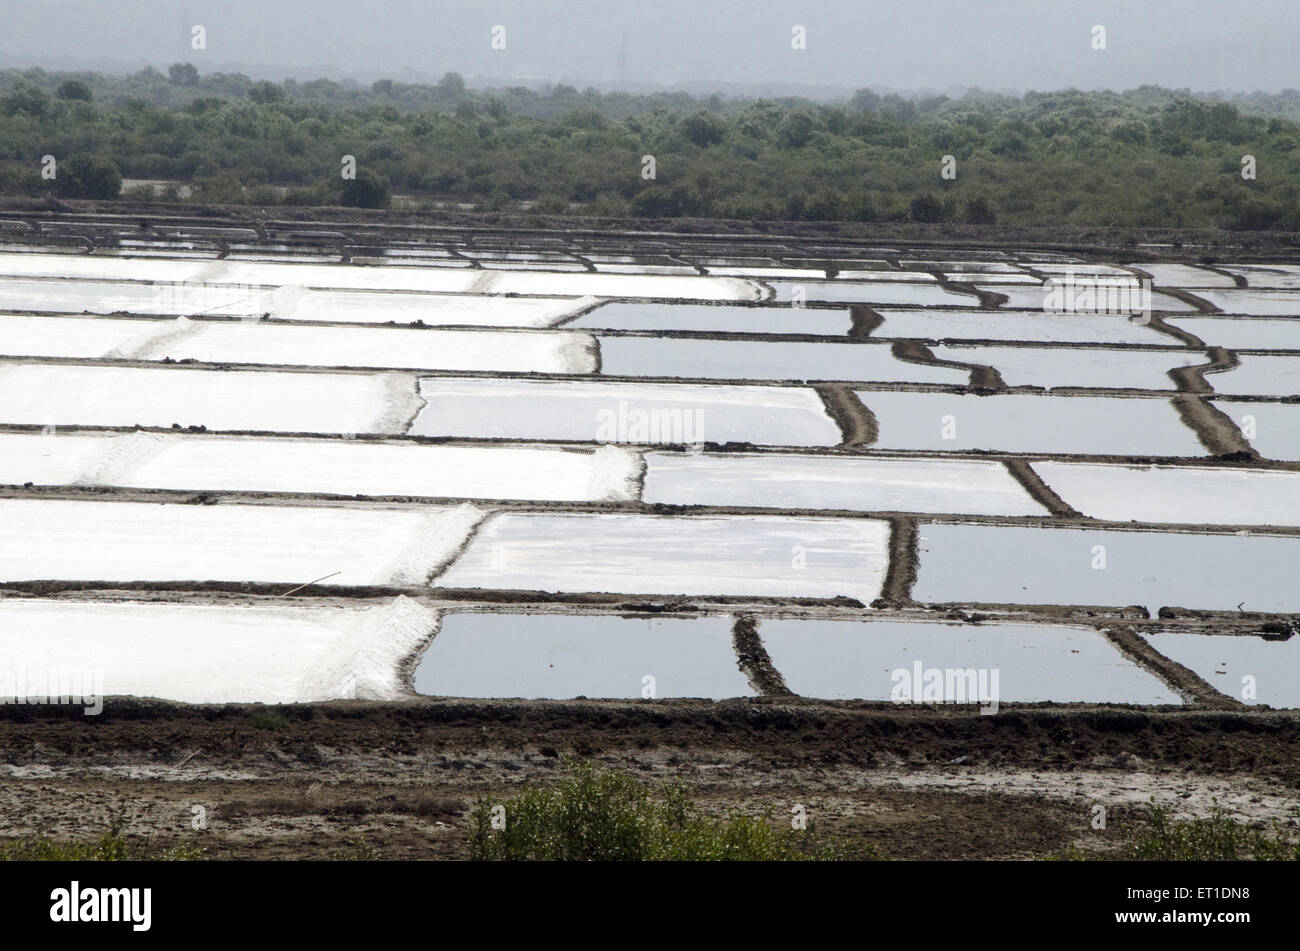 Cultivation of salt in Borivali at Mumbai Maharashtra India Stock Photo